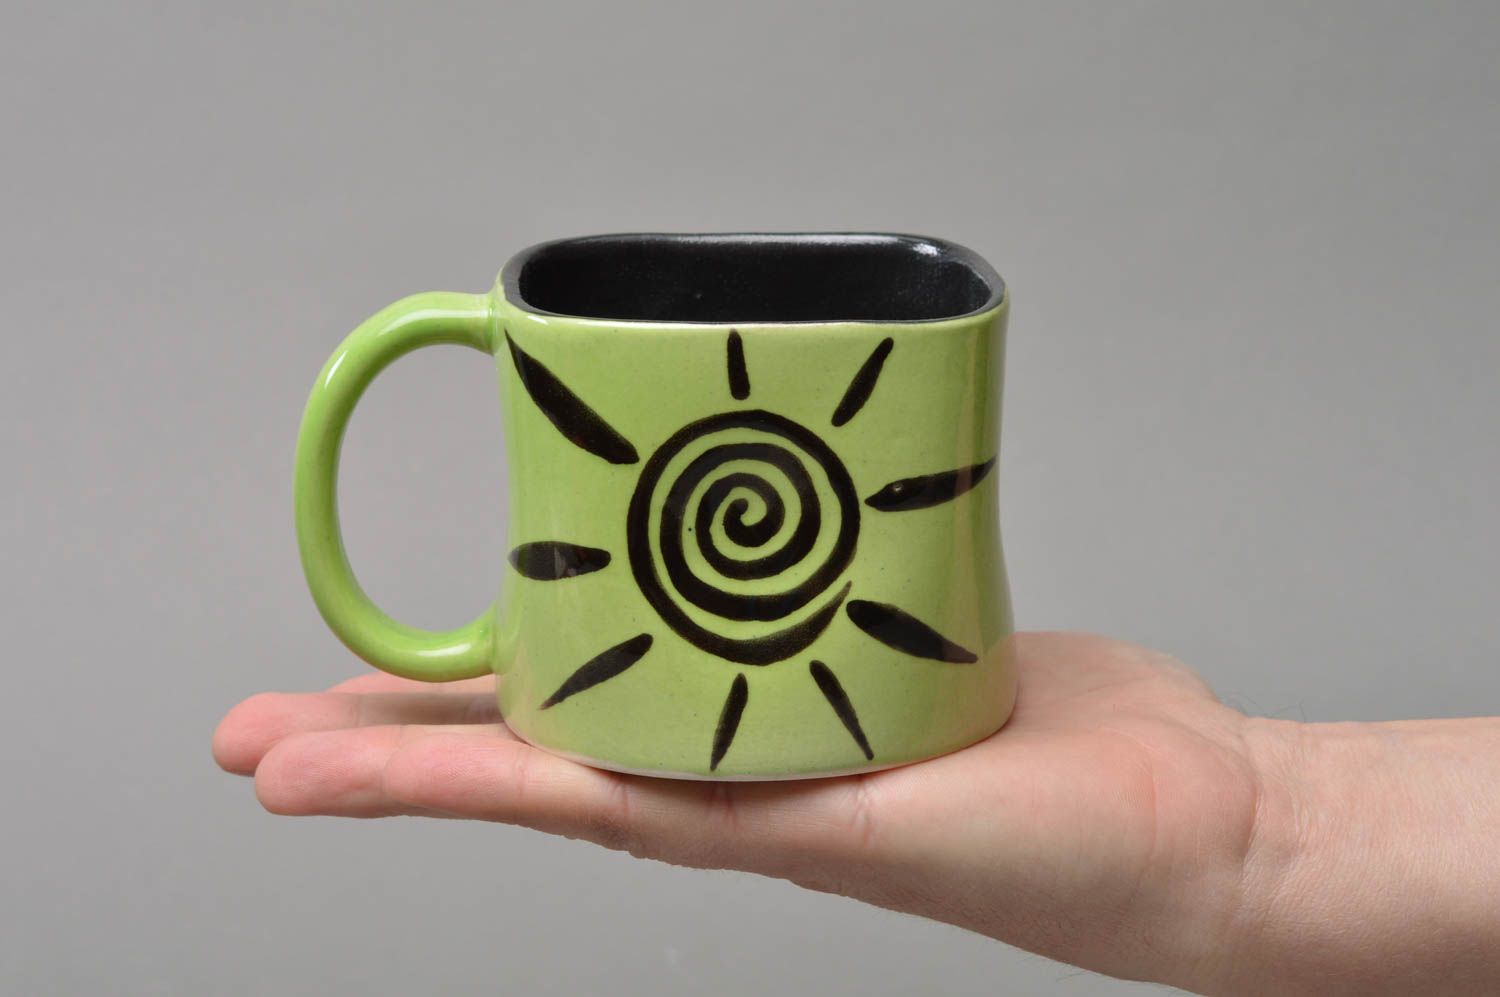 Handmade Porzellan Tasse mit Bemalung für Kaffee oder Tee in Grün und Schwarz foto 3